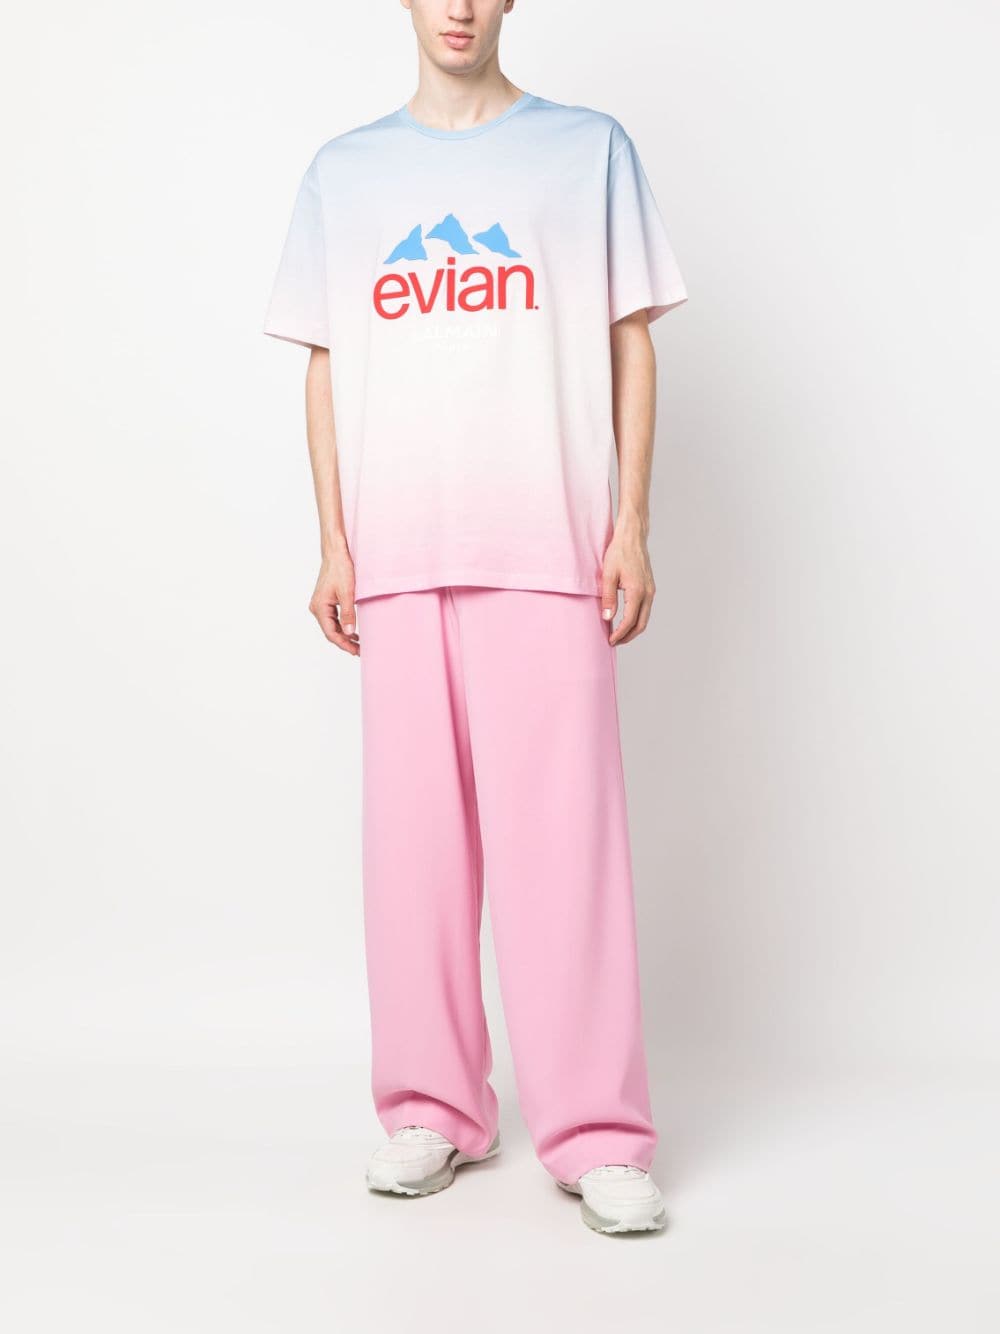 Balmain x Evian gradient-effect T-shirt - Blauw